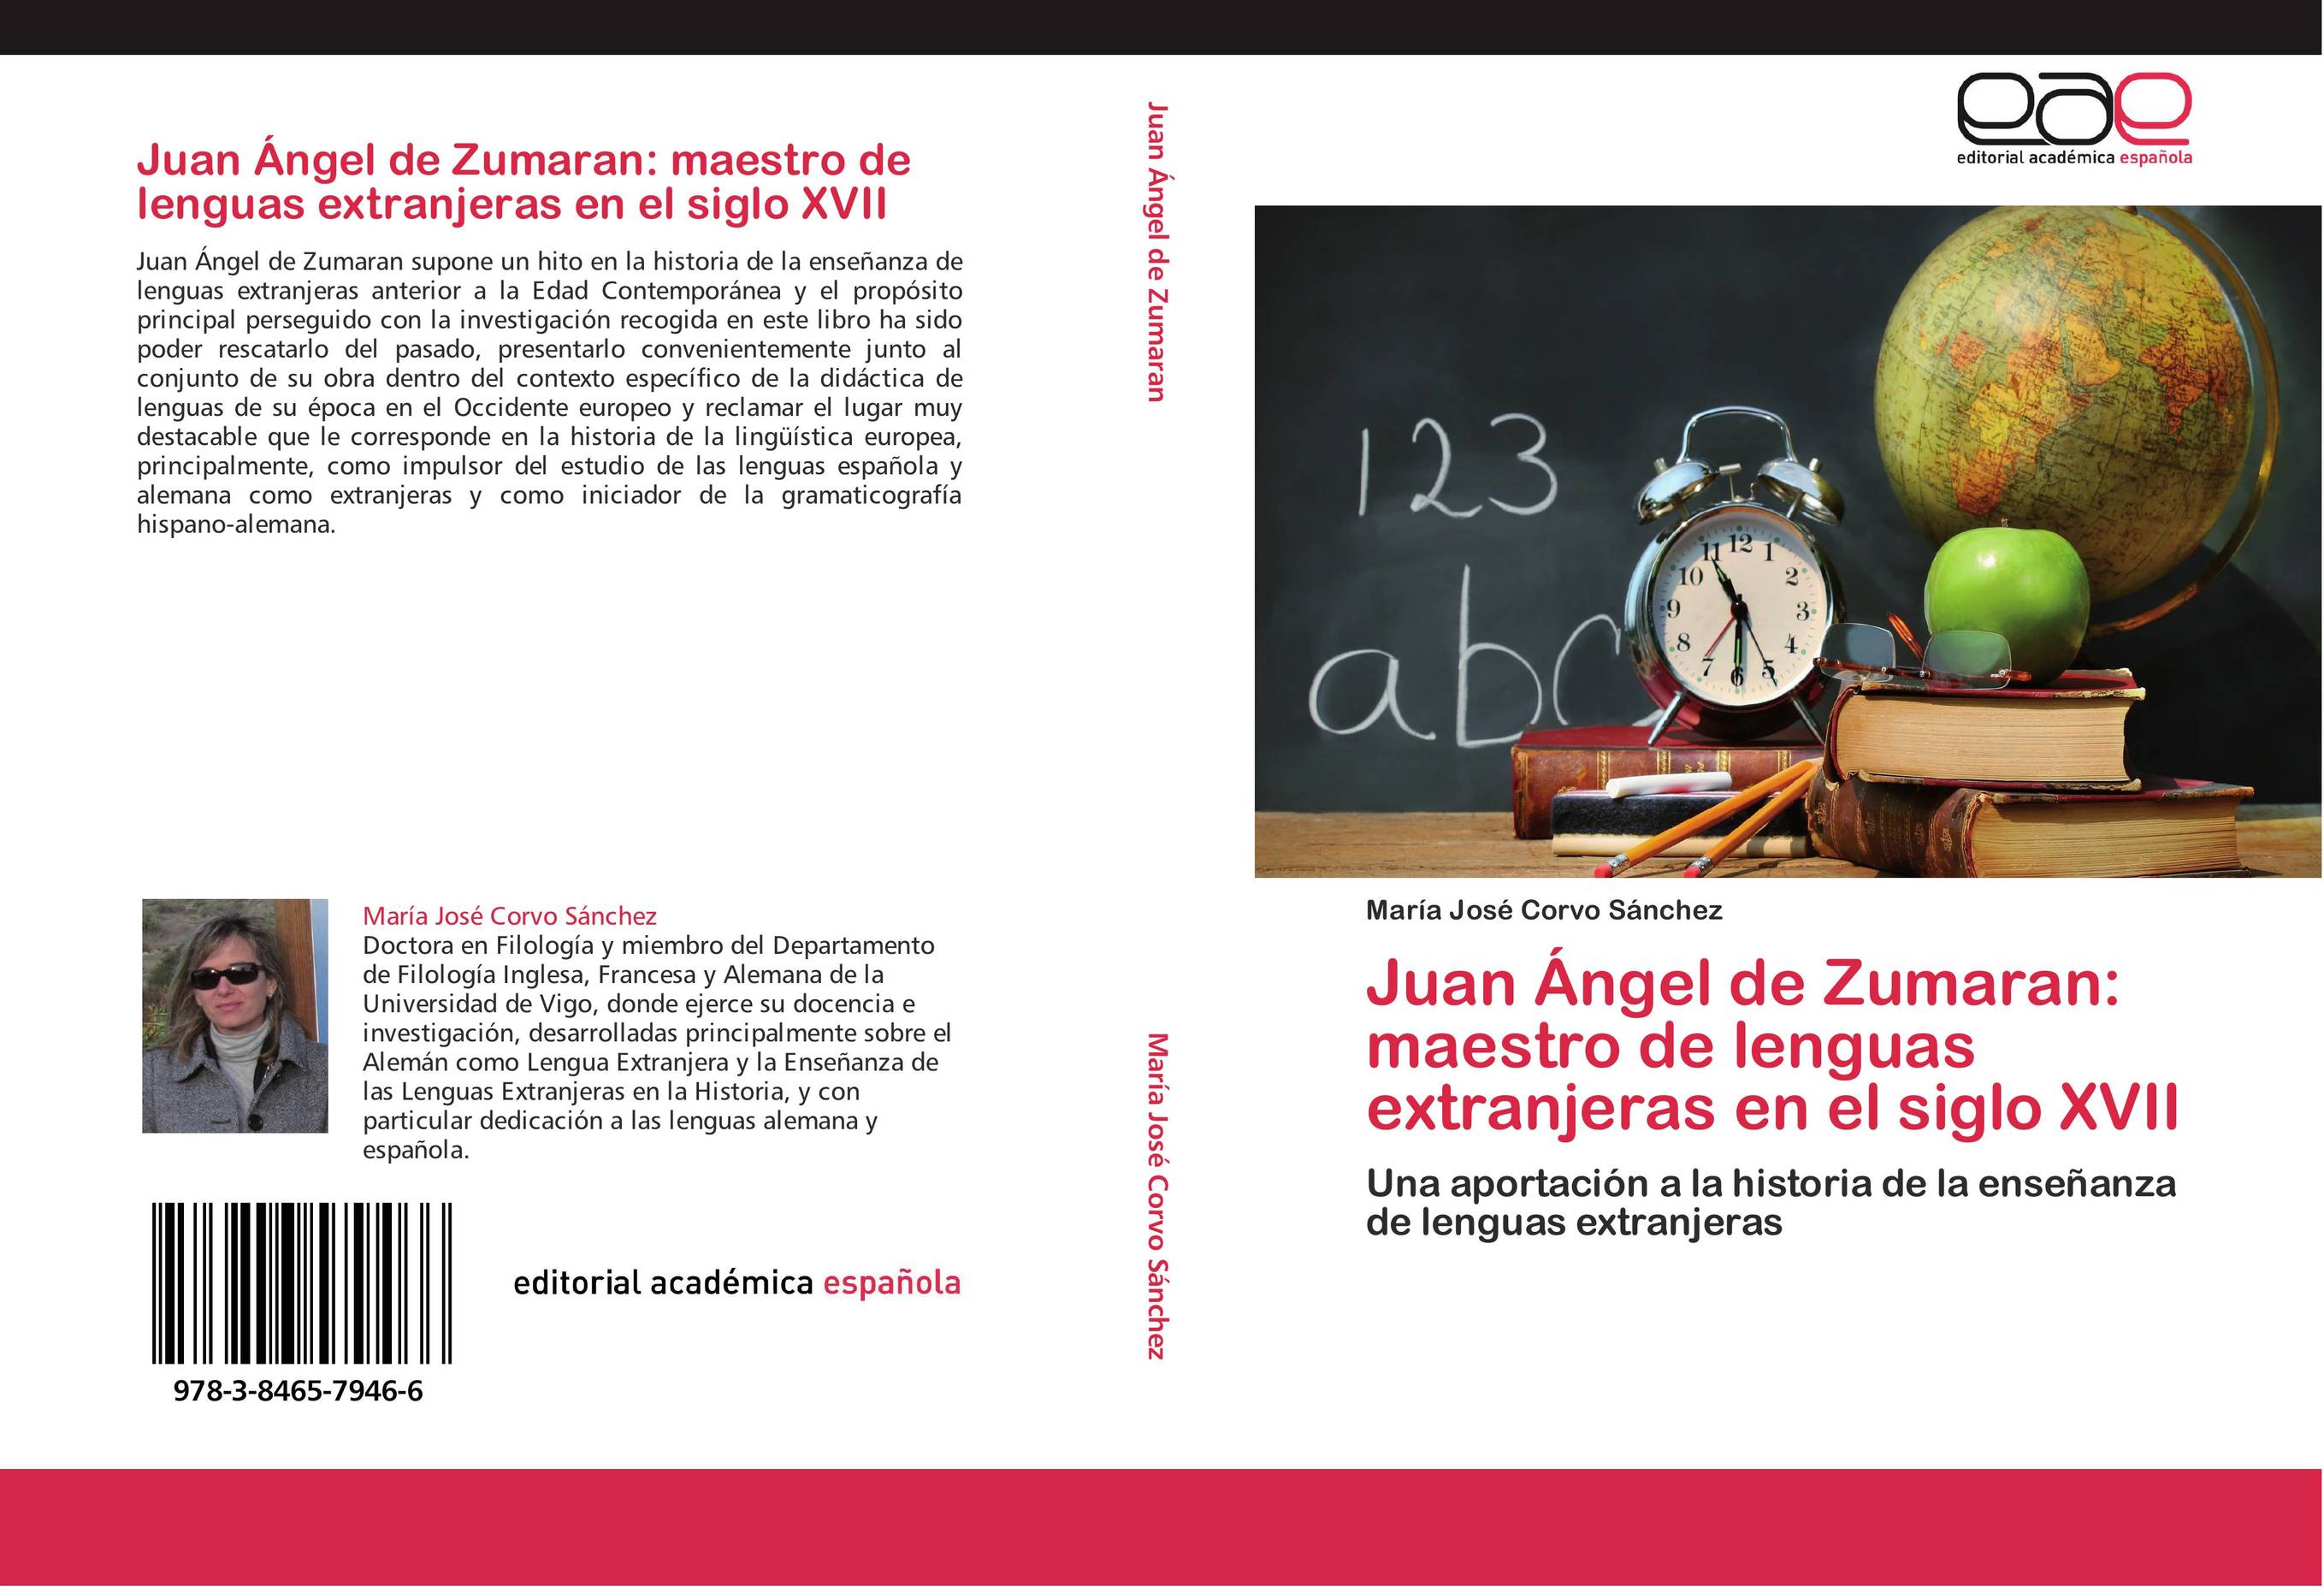 Juan Ángel de Zumaran: maestro de lenguas extranjeras en el siglo XVII